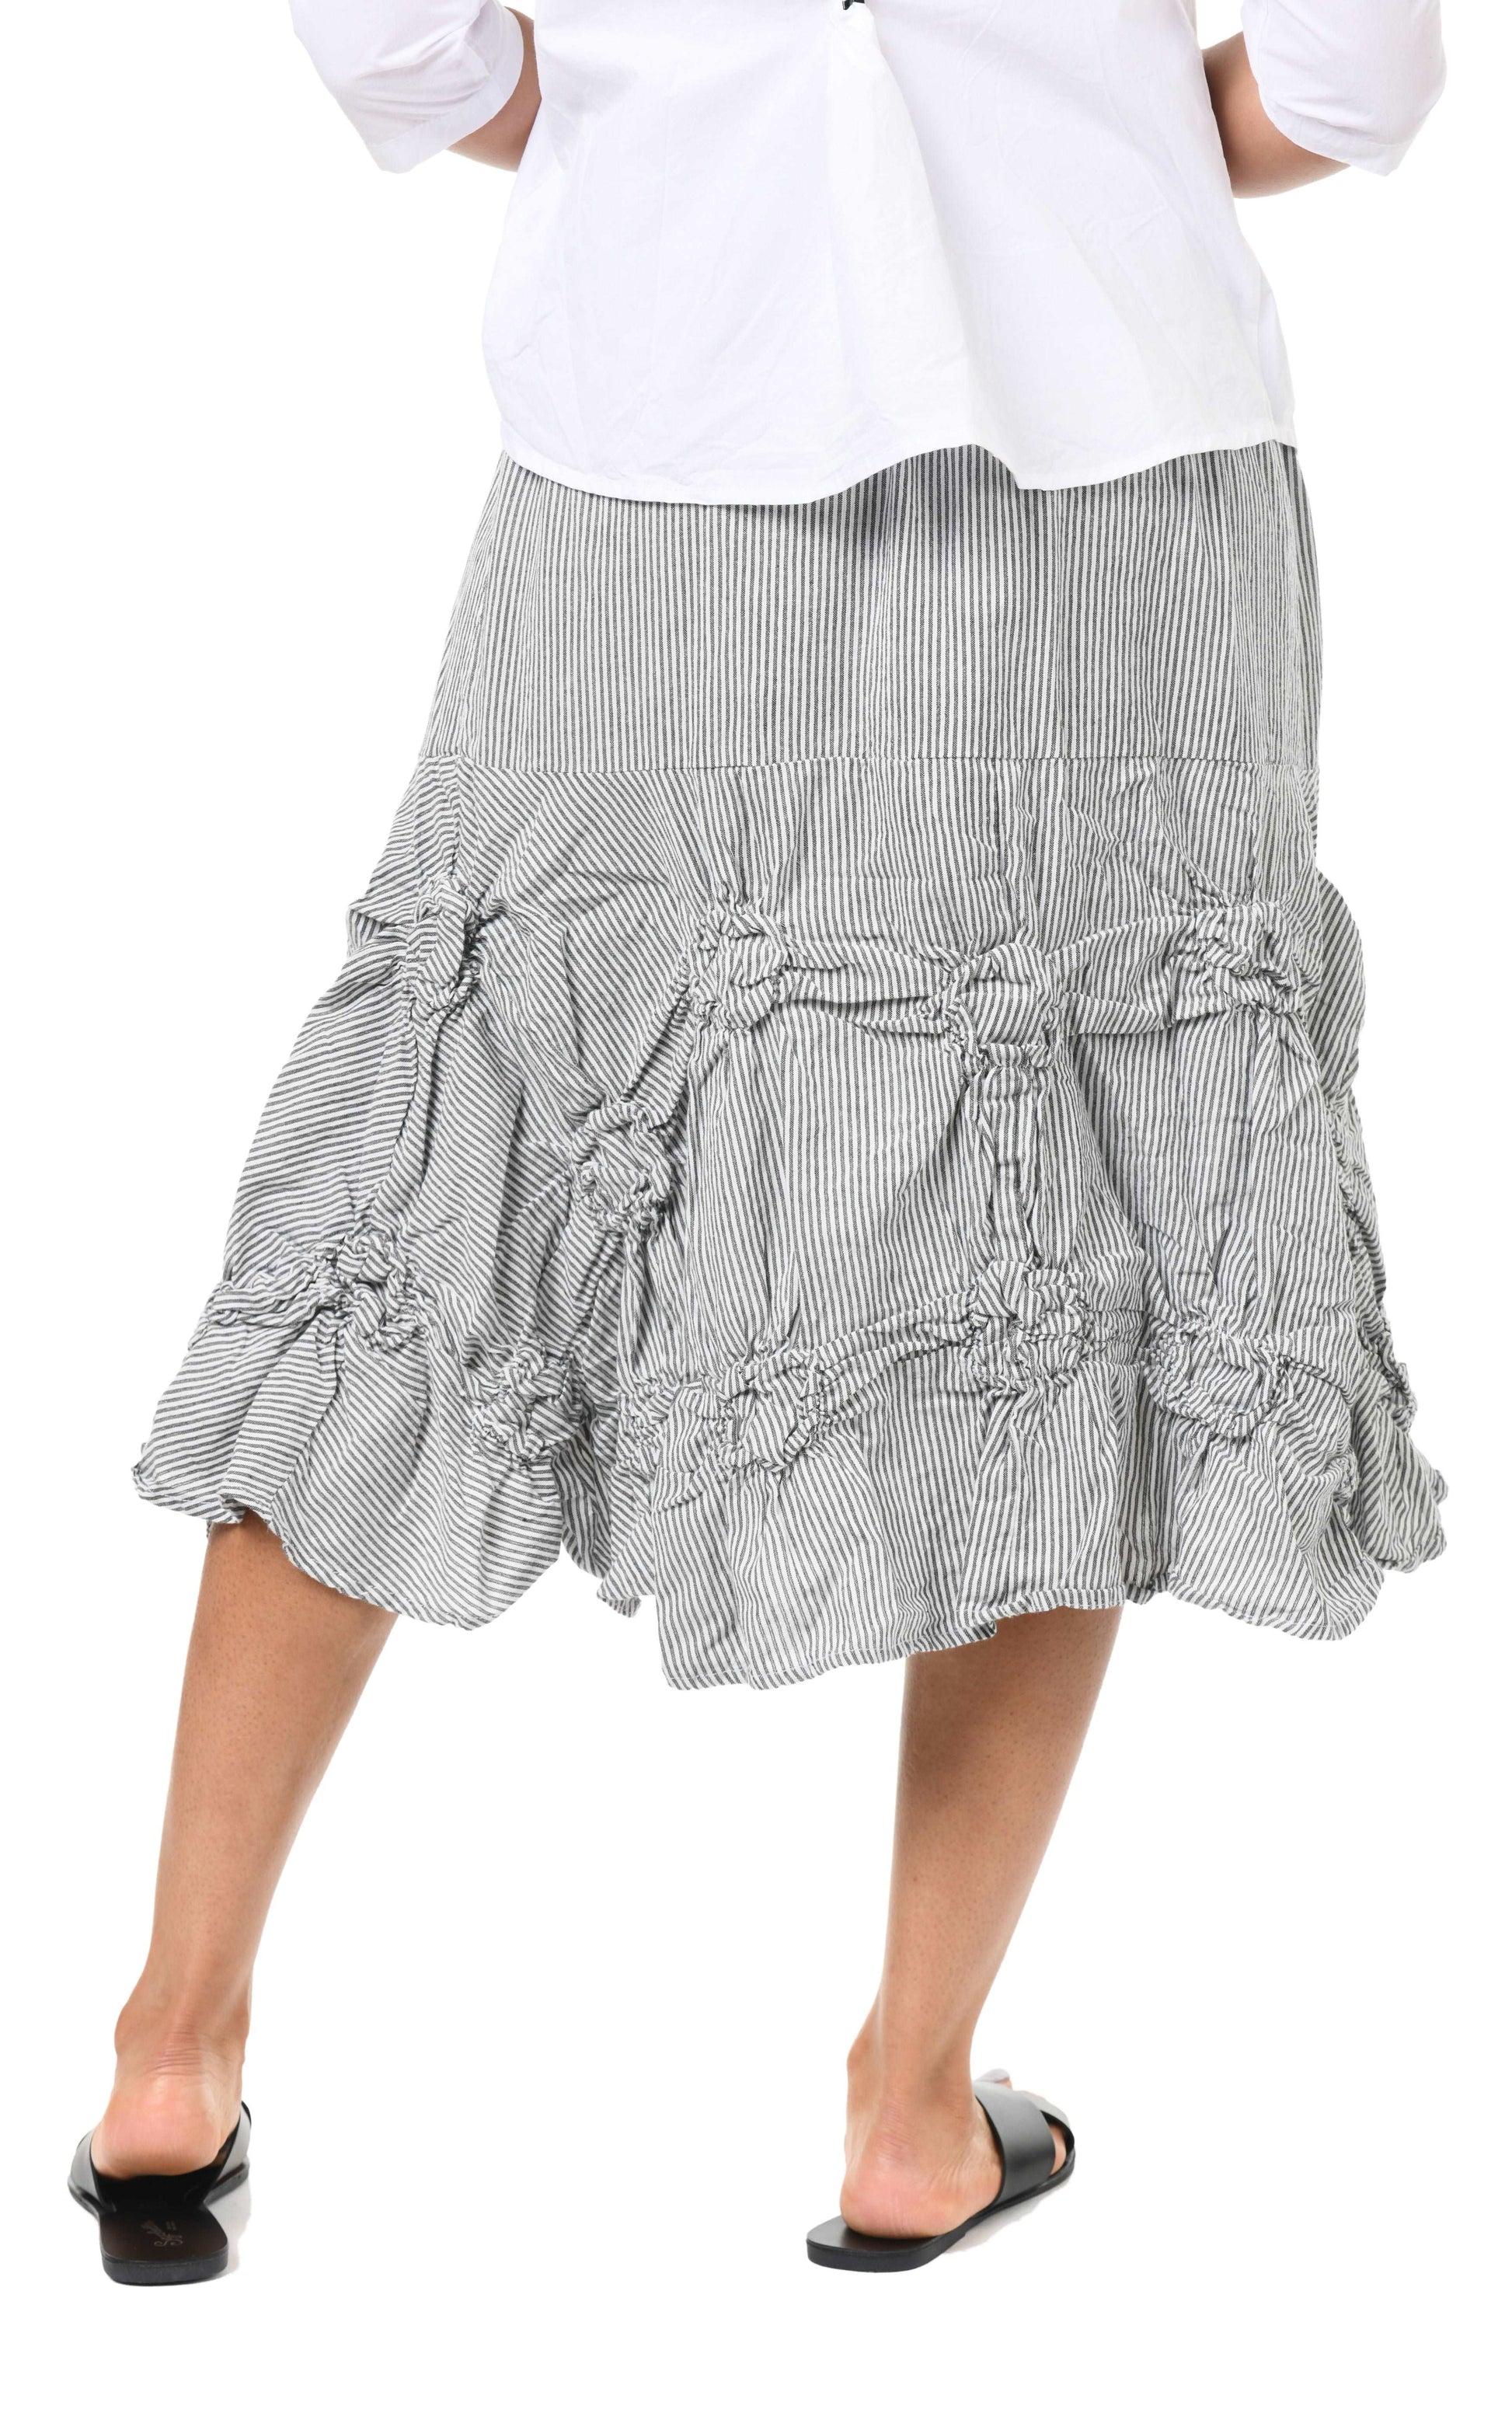 CV378 Millie Skirt in Ticking Stripe